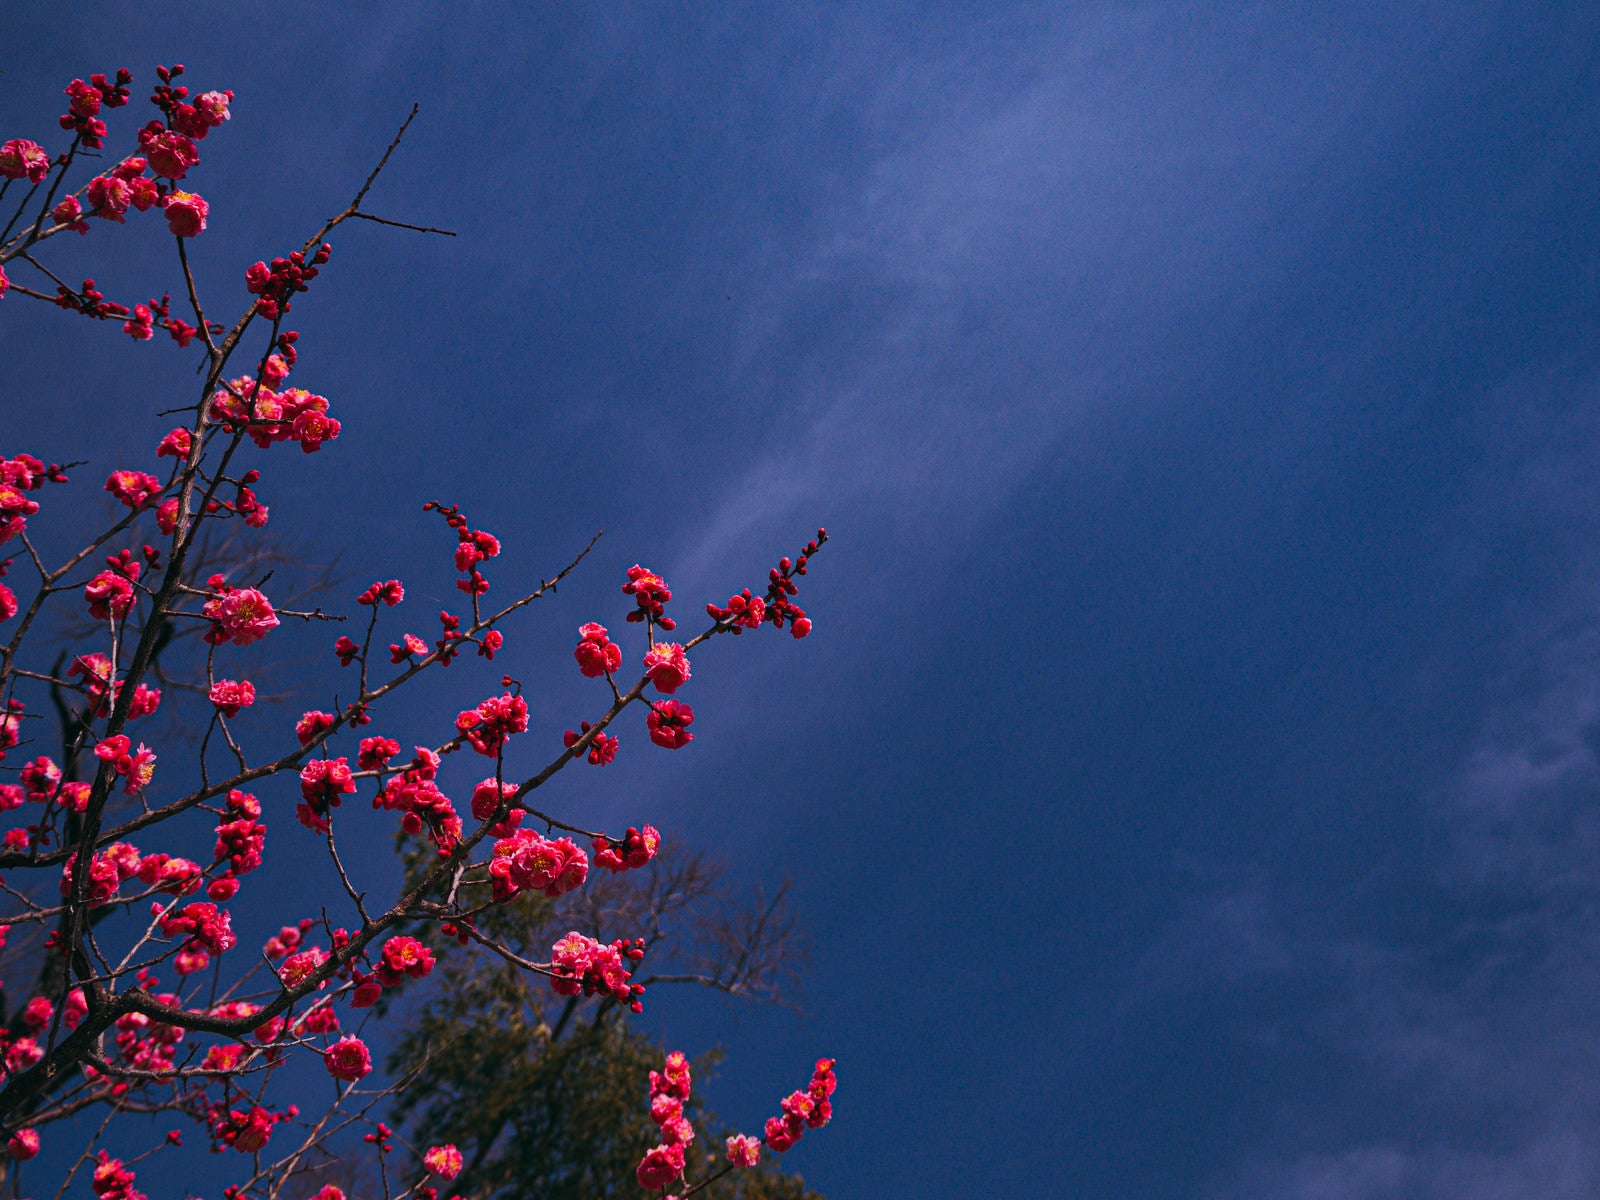 「青空に映える八重の紅梅」の写真